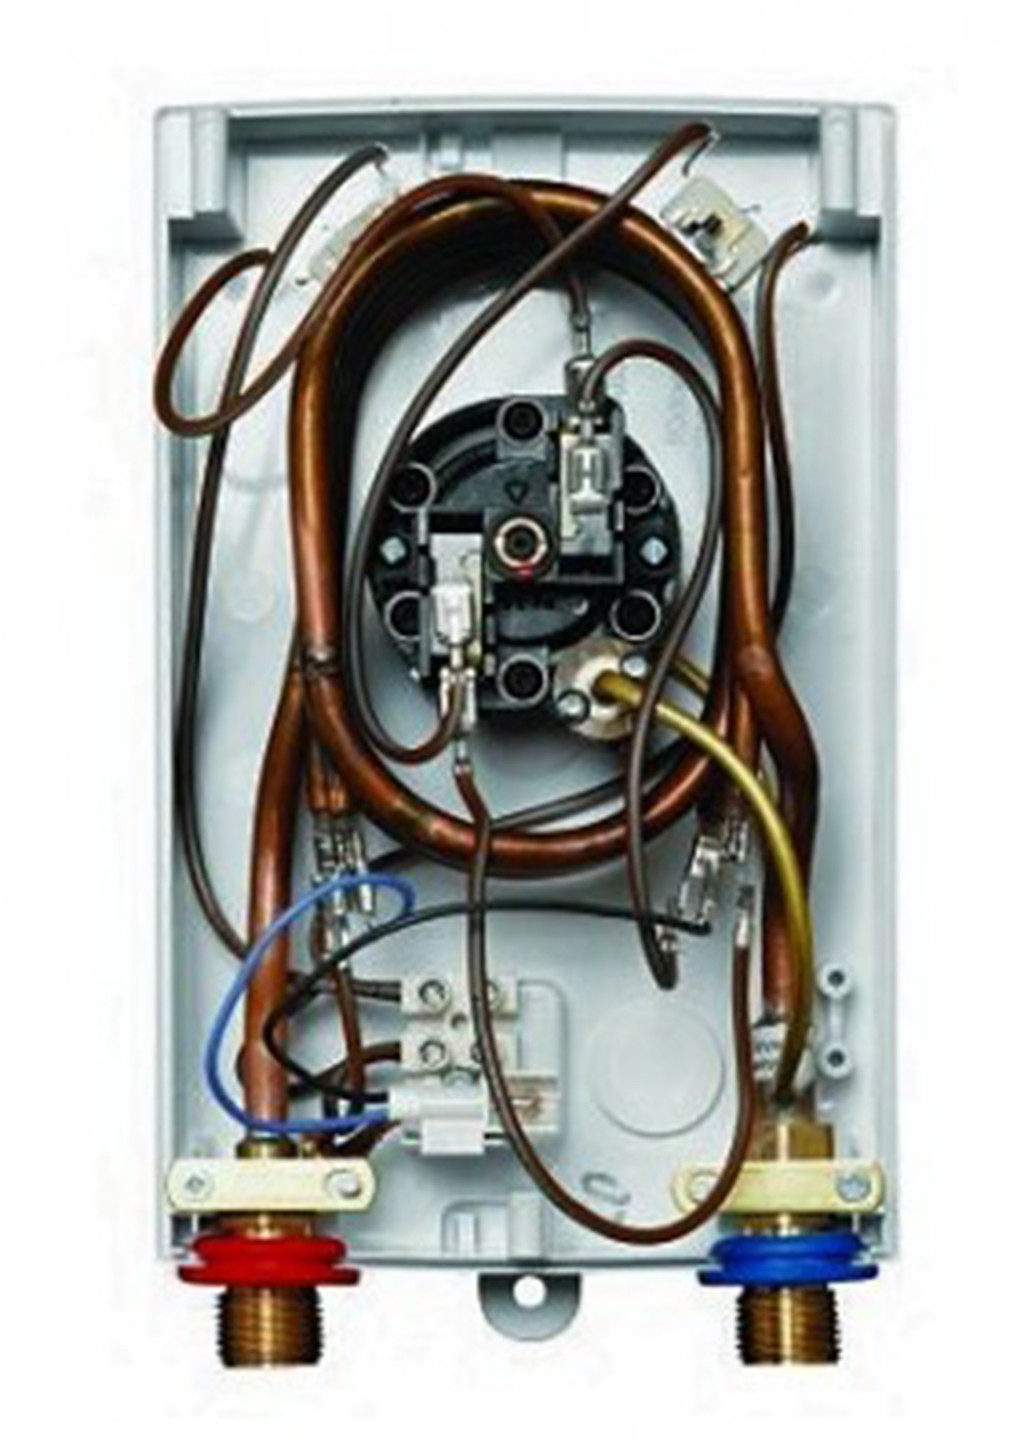 Электрический проточный водонагреватель Bosch Tronic 1000 6 T белый